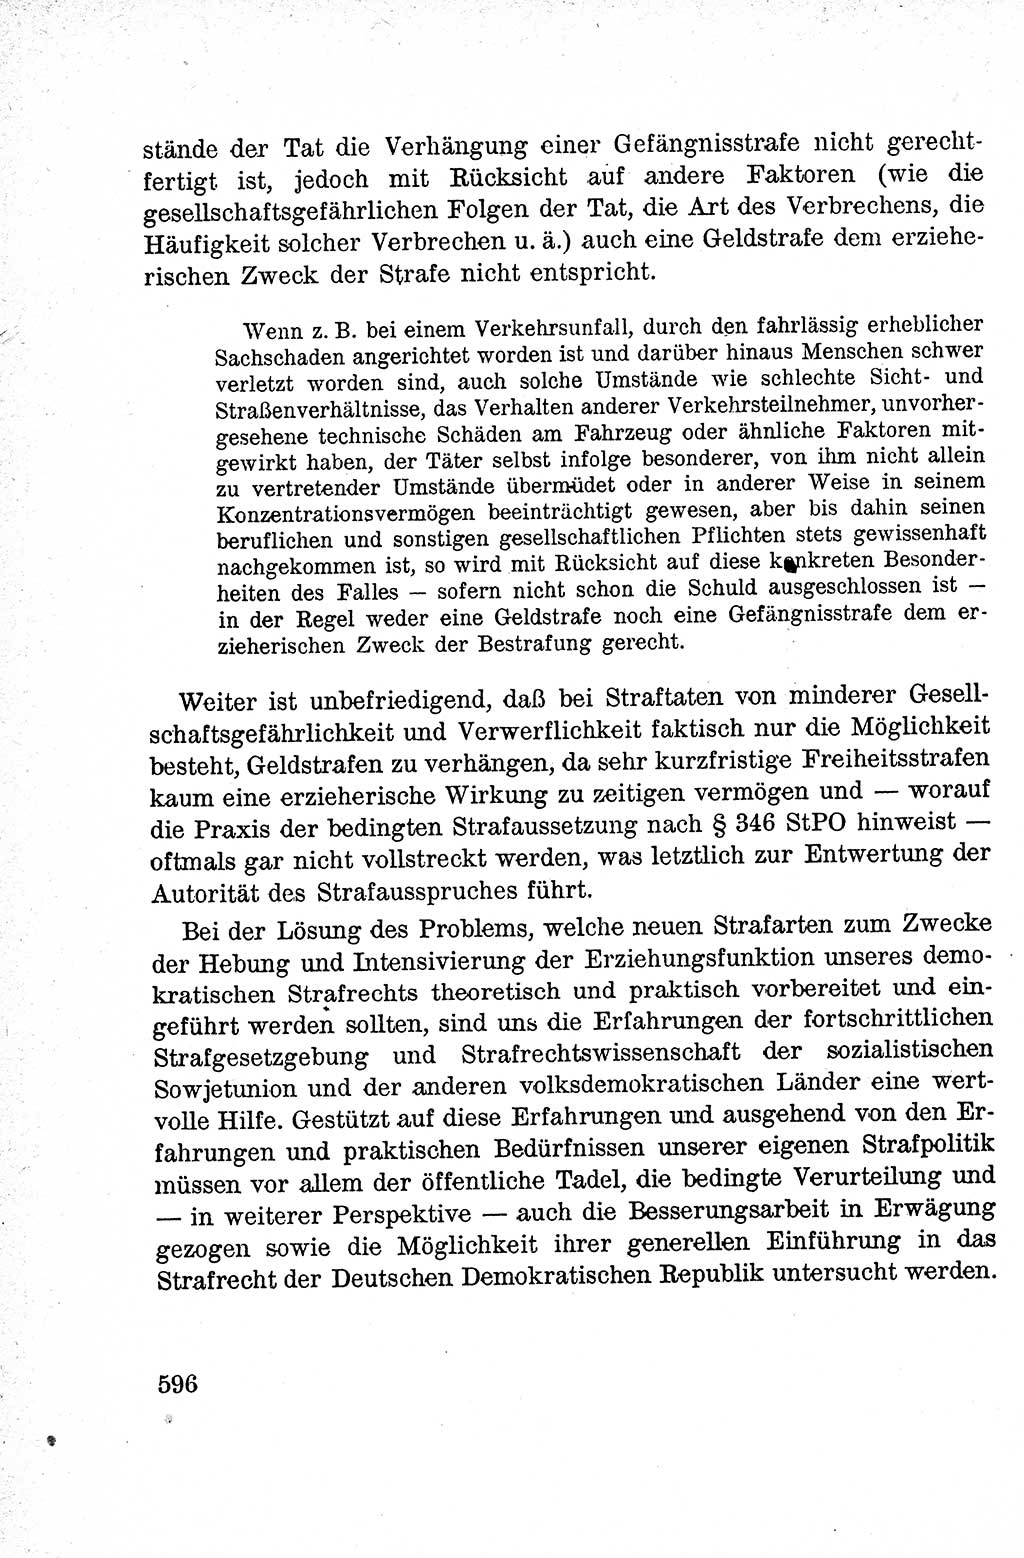 Lehrbuch des Strafrechts der Deutschen Demokratischen Republik (DDR), Allgemeiner Teil 1959, Seite 596 (Lb. Strafr. DDR AT 1959, S. 596)